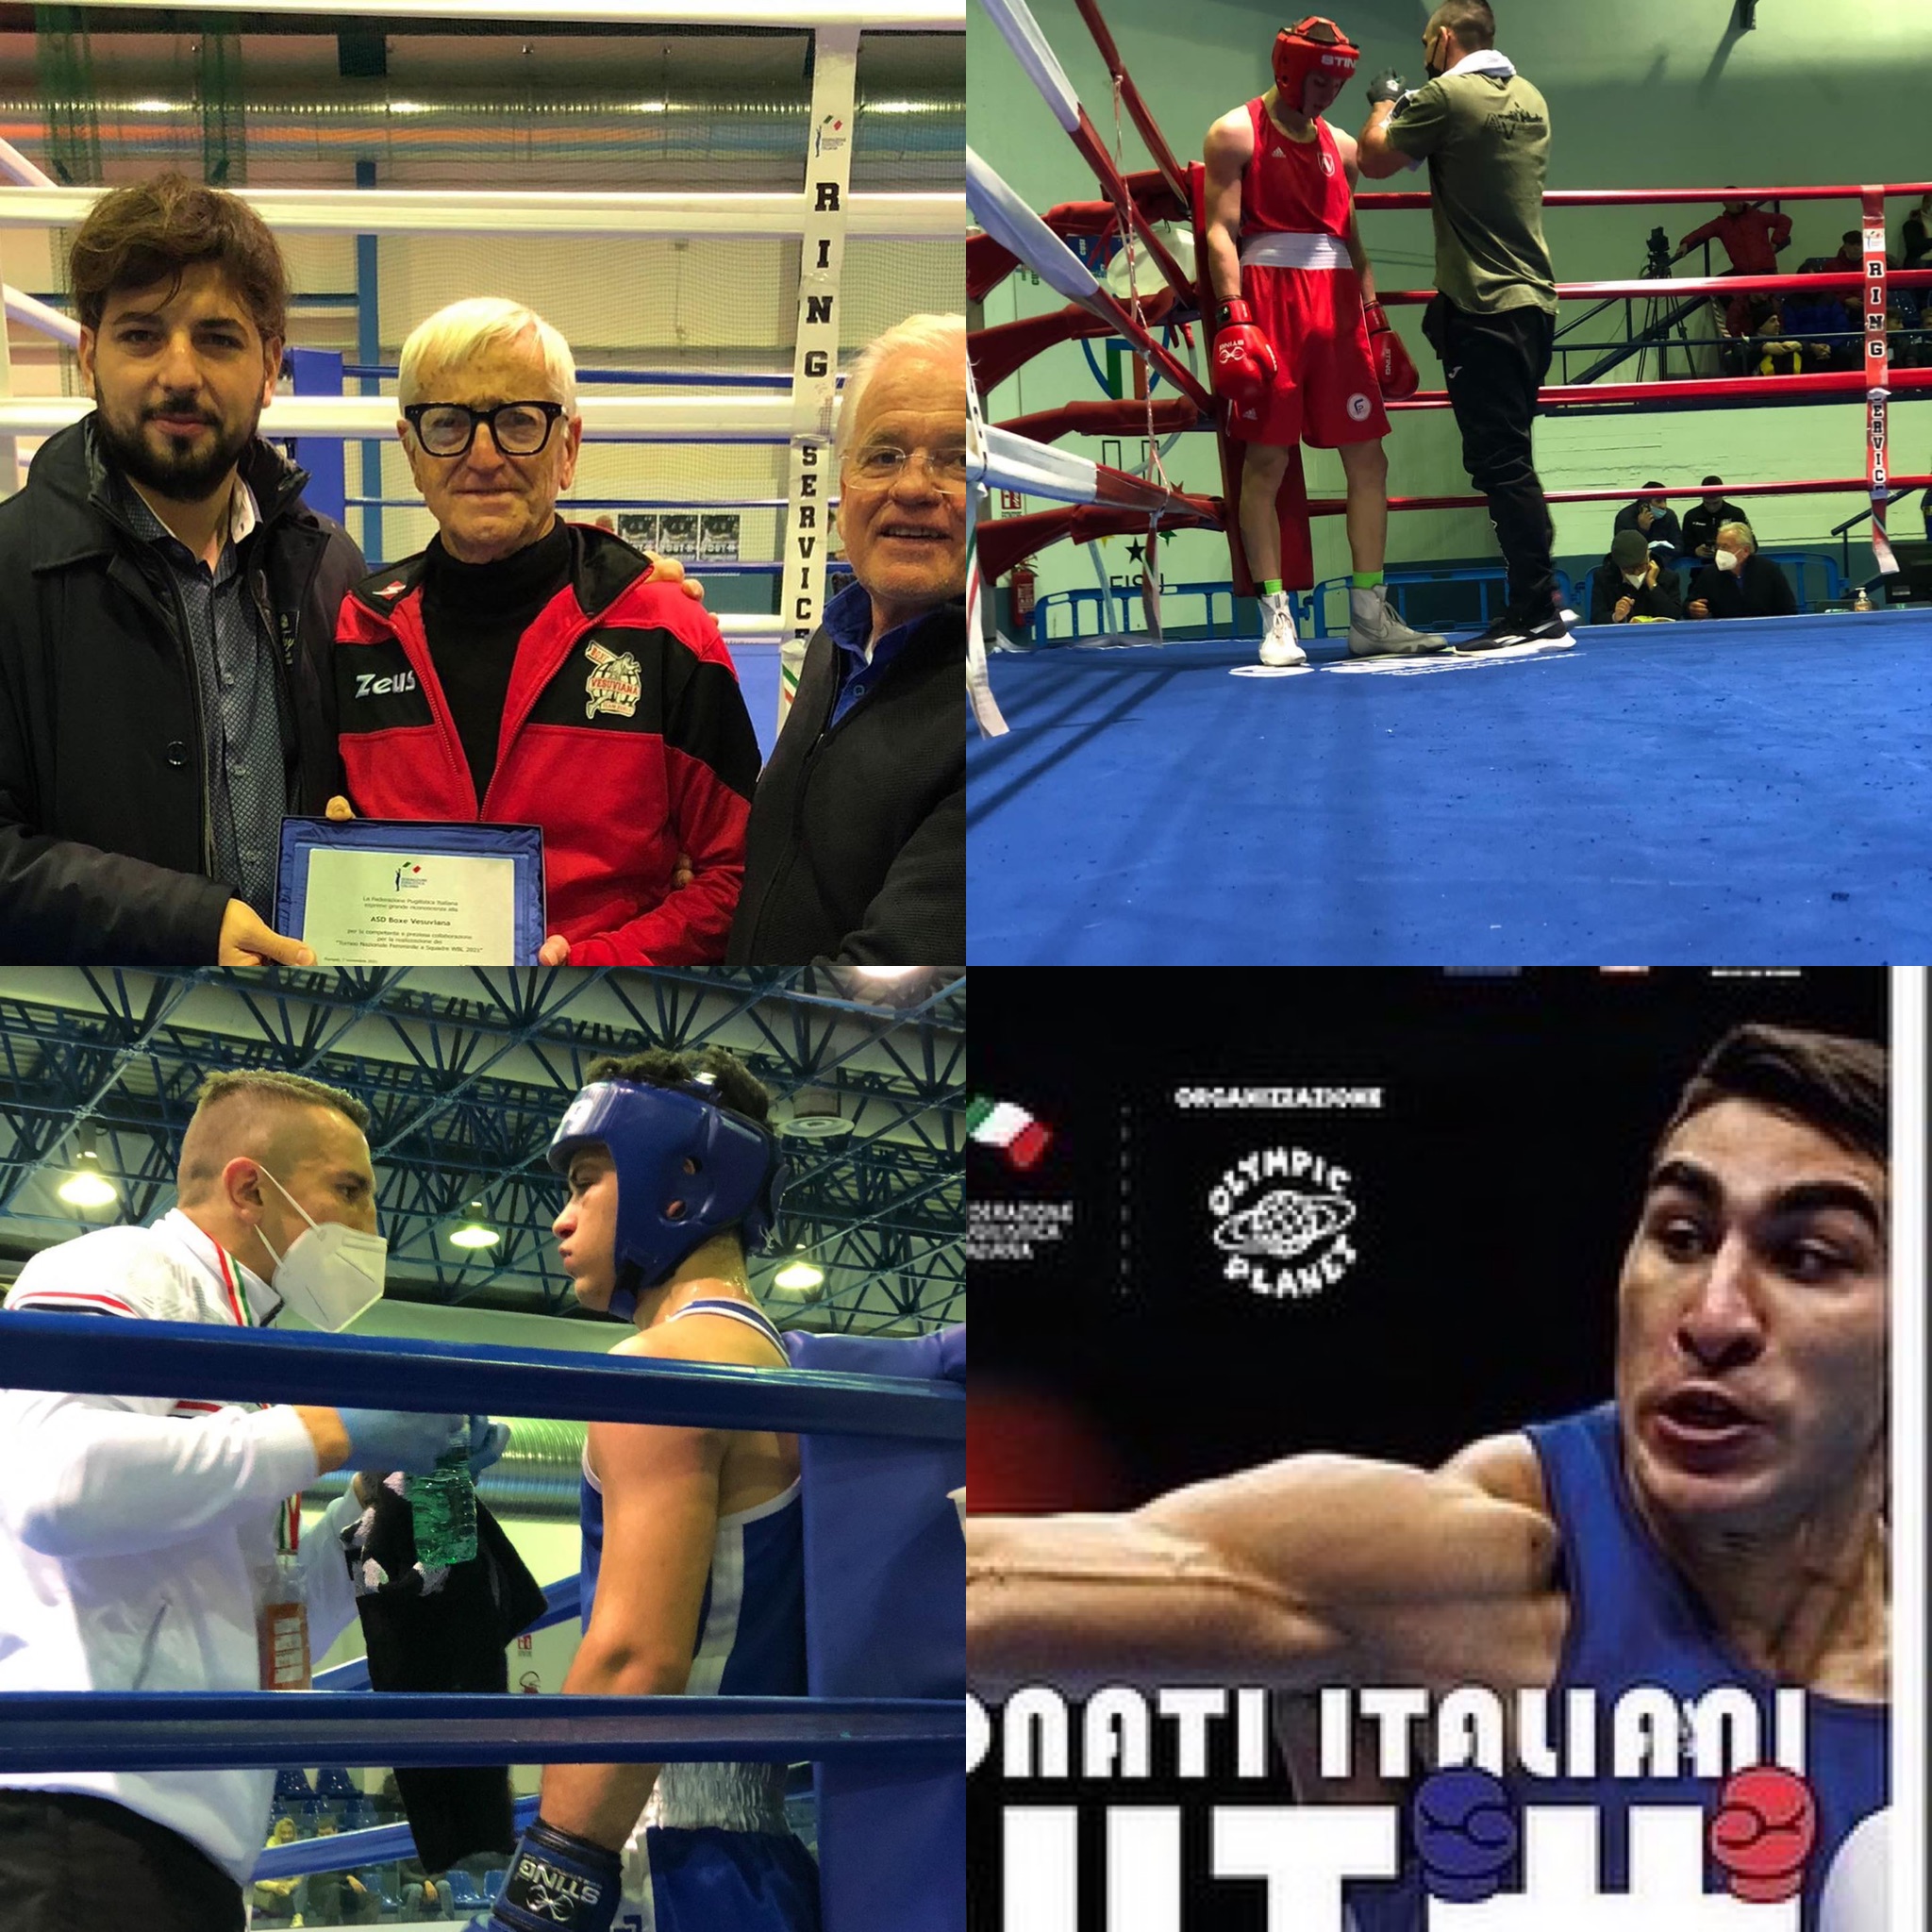 Campionati Italiani Youth Maschili 2021 - Baronissi (SA) 26-28 Novembre - RISULTATI 4° - l'11 e 12 Dicembre le Semifinali e le Finalissime